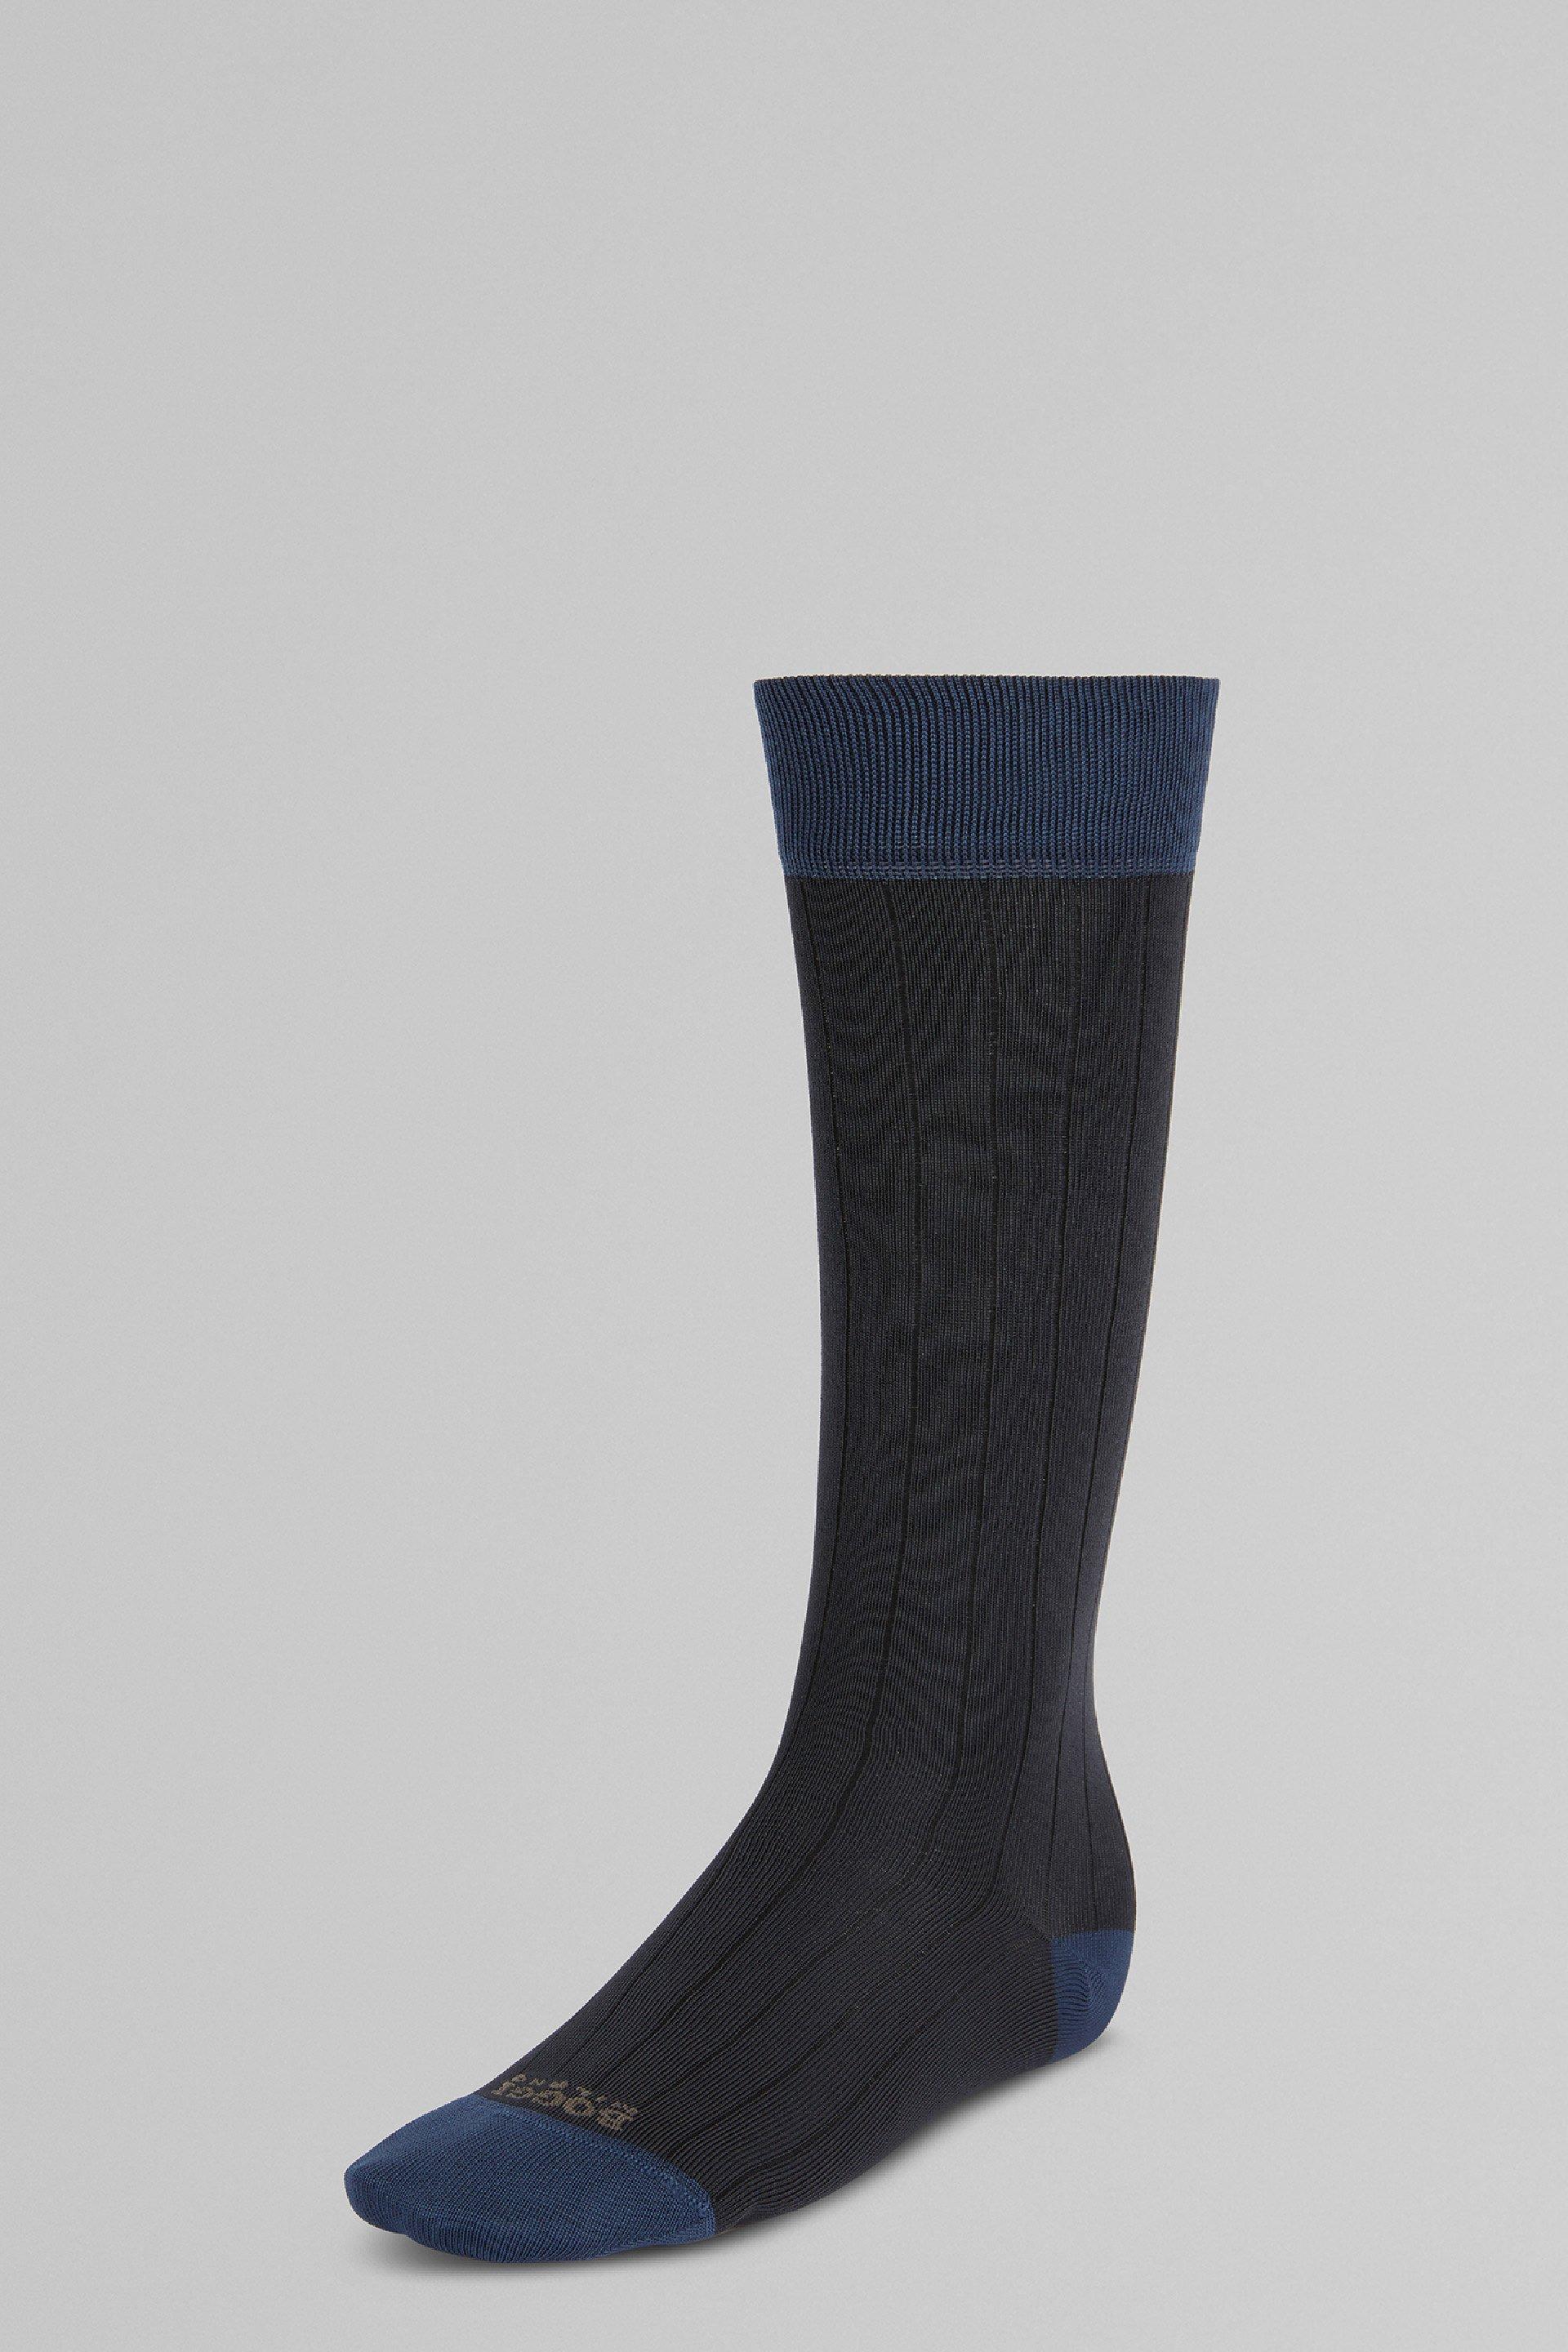 Boggi Milano - Grey Performance Yarn Ribbed Socks